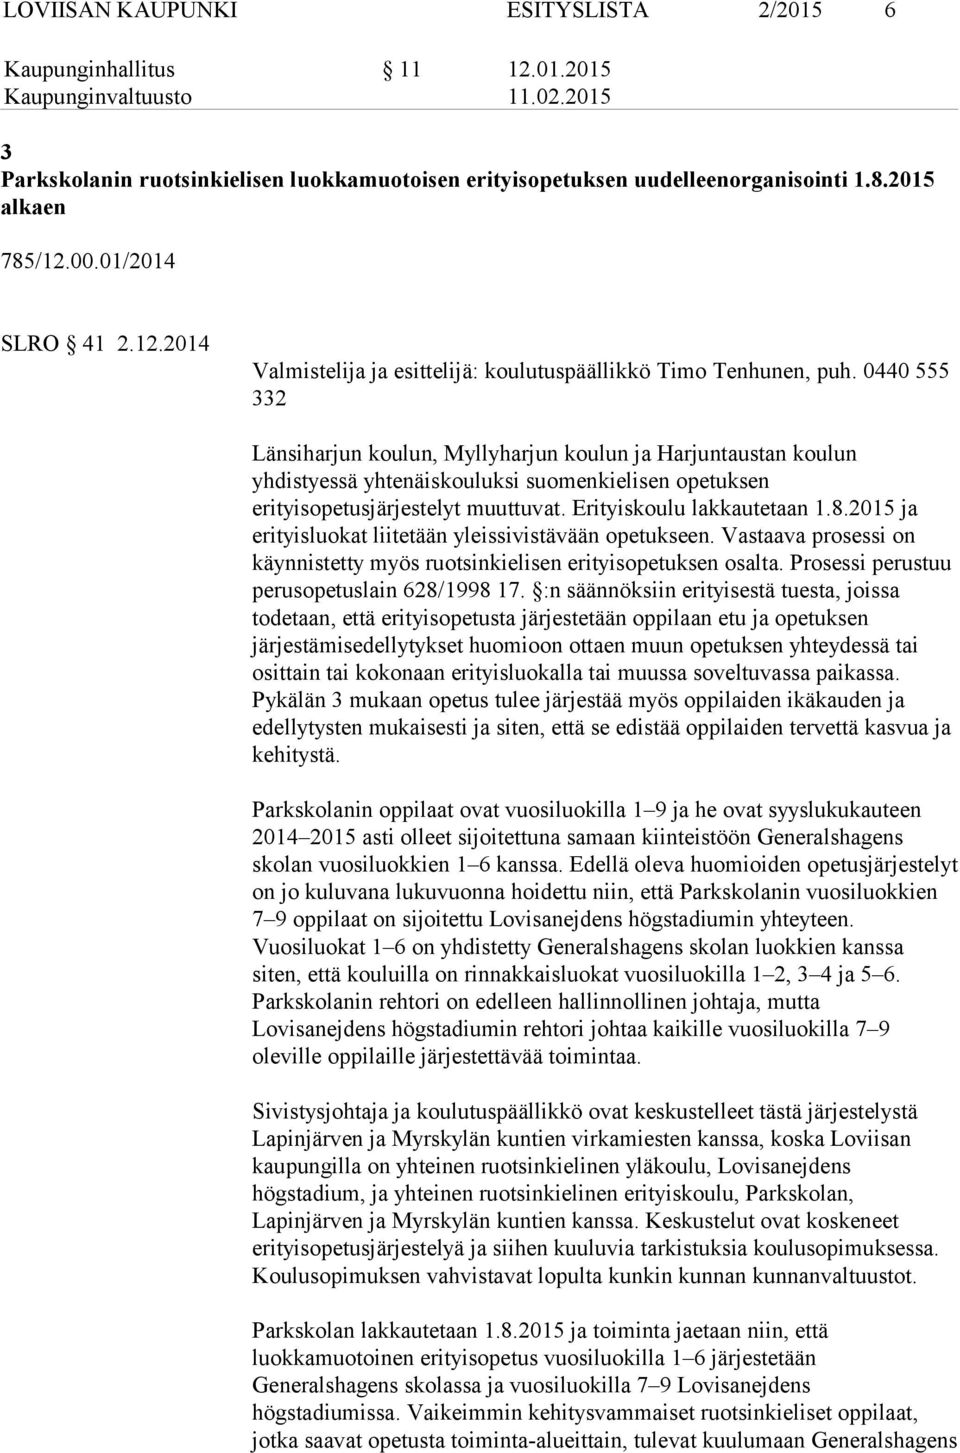 0440 555 332 Länsiharjun koulun, Myllyharjun koulun ja Harjuntaustan koulun yhdistyessä yhtenäiskouluksi suomenkielisen opetuksen erityisopetusjärjestelyt muuttuvat. Erityiskoulu lakkautetaan 1.8.